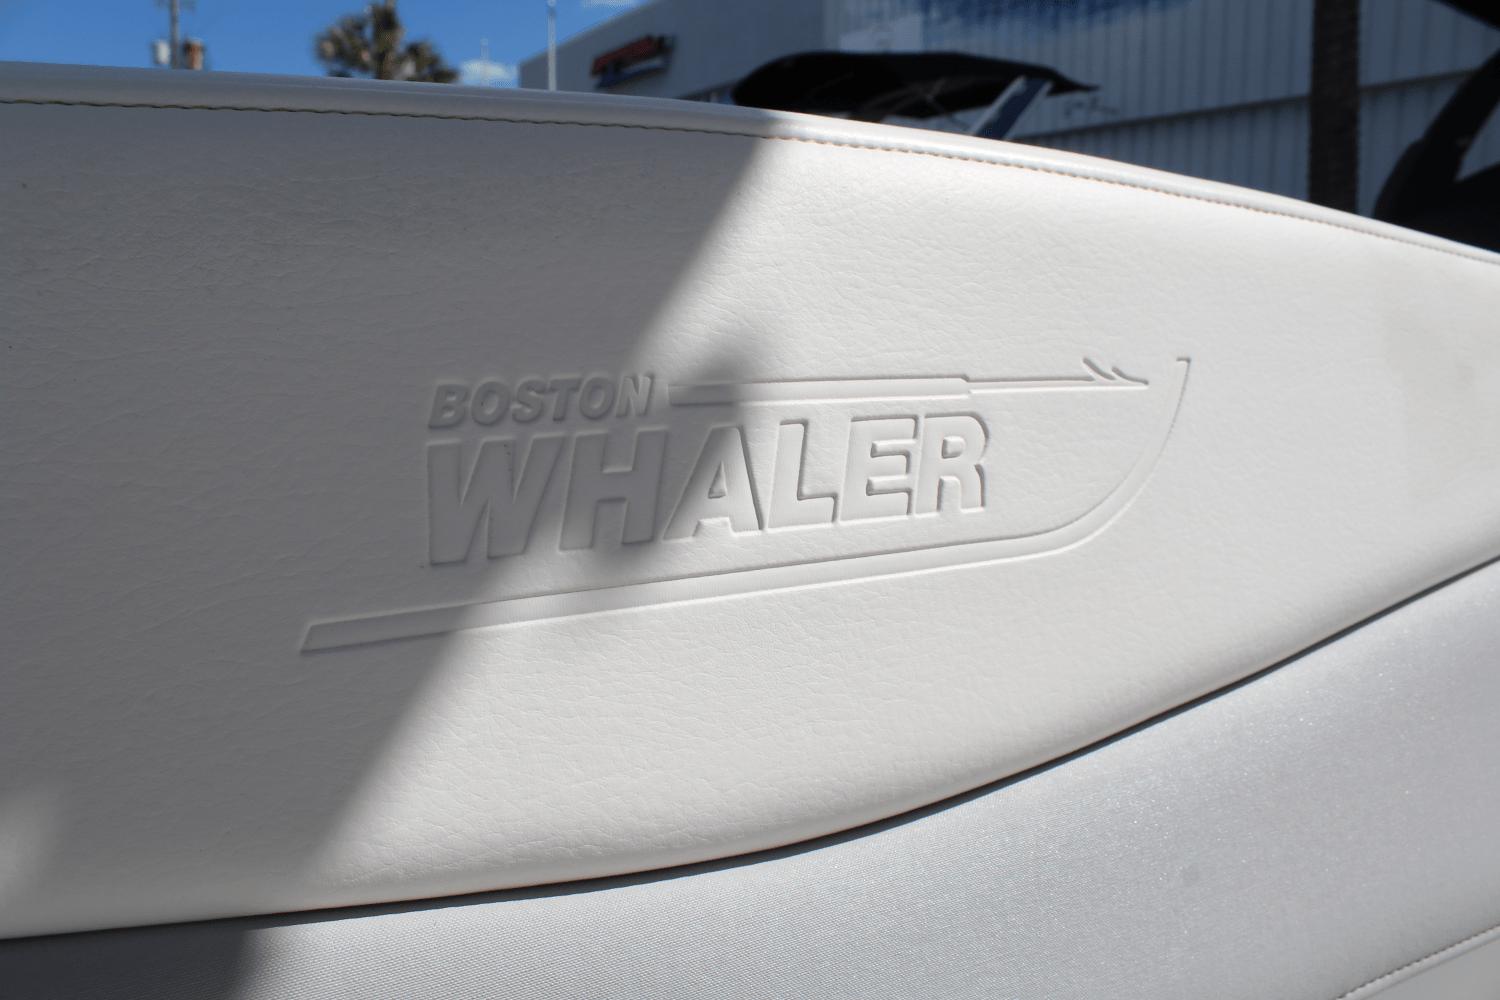 2015 Boston Whaler 240 Dauntless